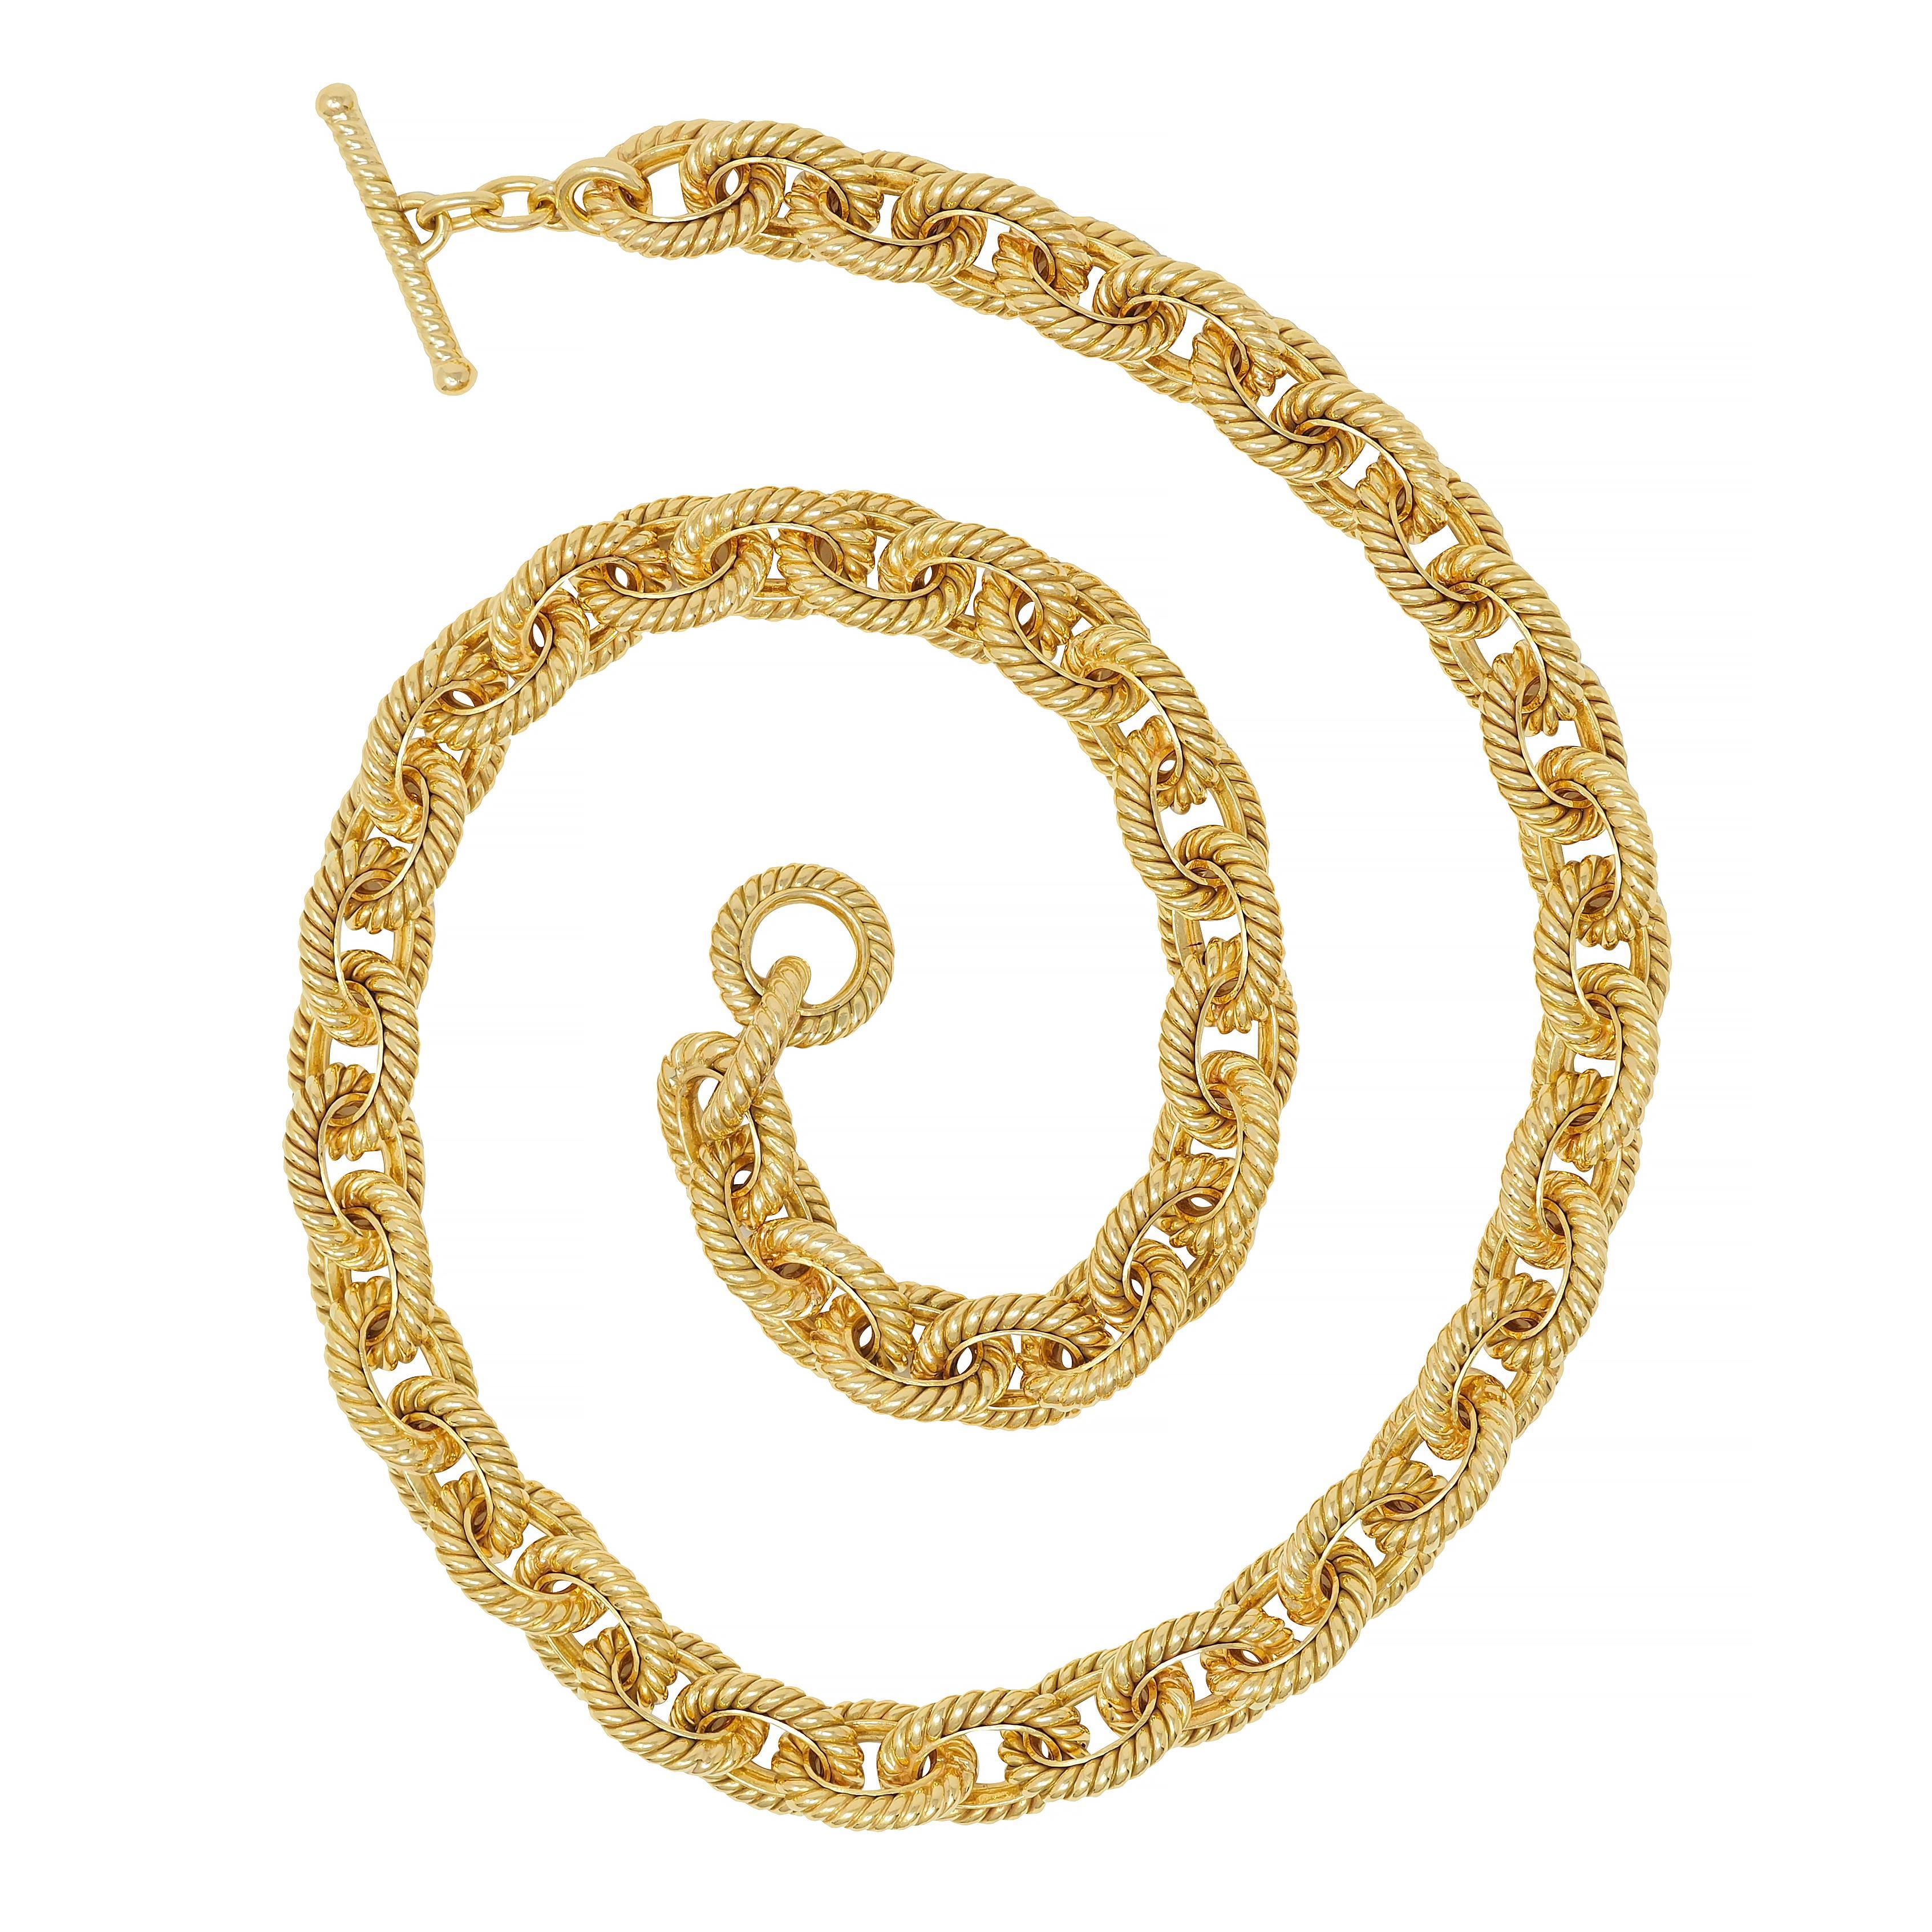 Entworfen als 10,0 mm Gelbgold-Kabelgliederkette 
Die Glieder sind tief gerillt mit gedrehtem Seilmotiv 
Abschluss mit Knebelverschluß
Gestempelt mit italienischen Prüfzeichen für 18 Karat Gold
Vollständig signiert für Tiffany & Co, Italien
Circa: